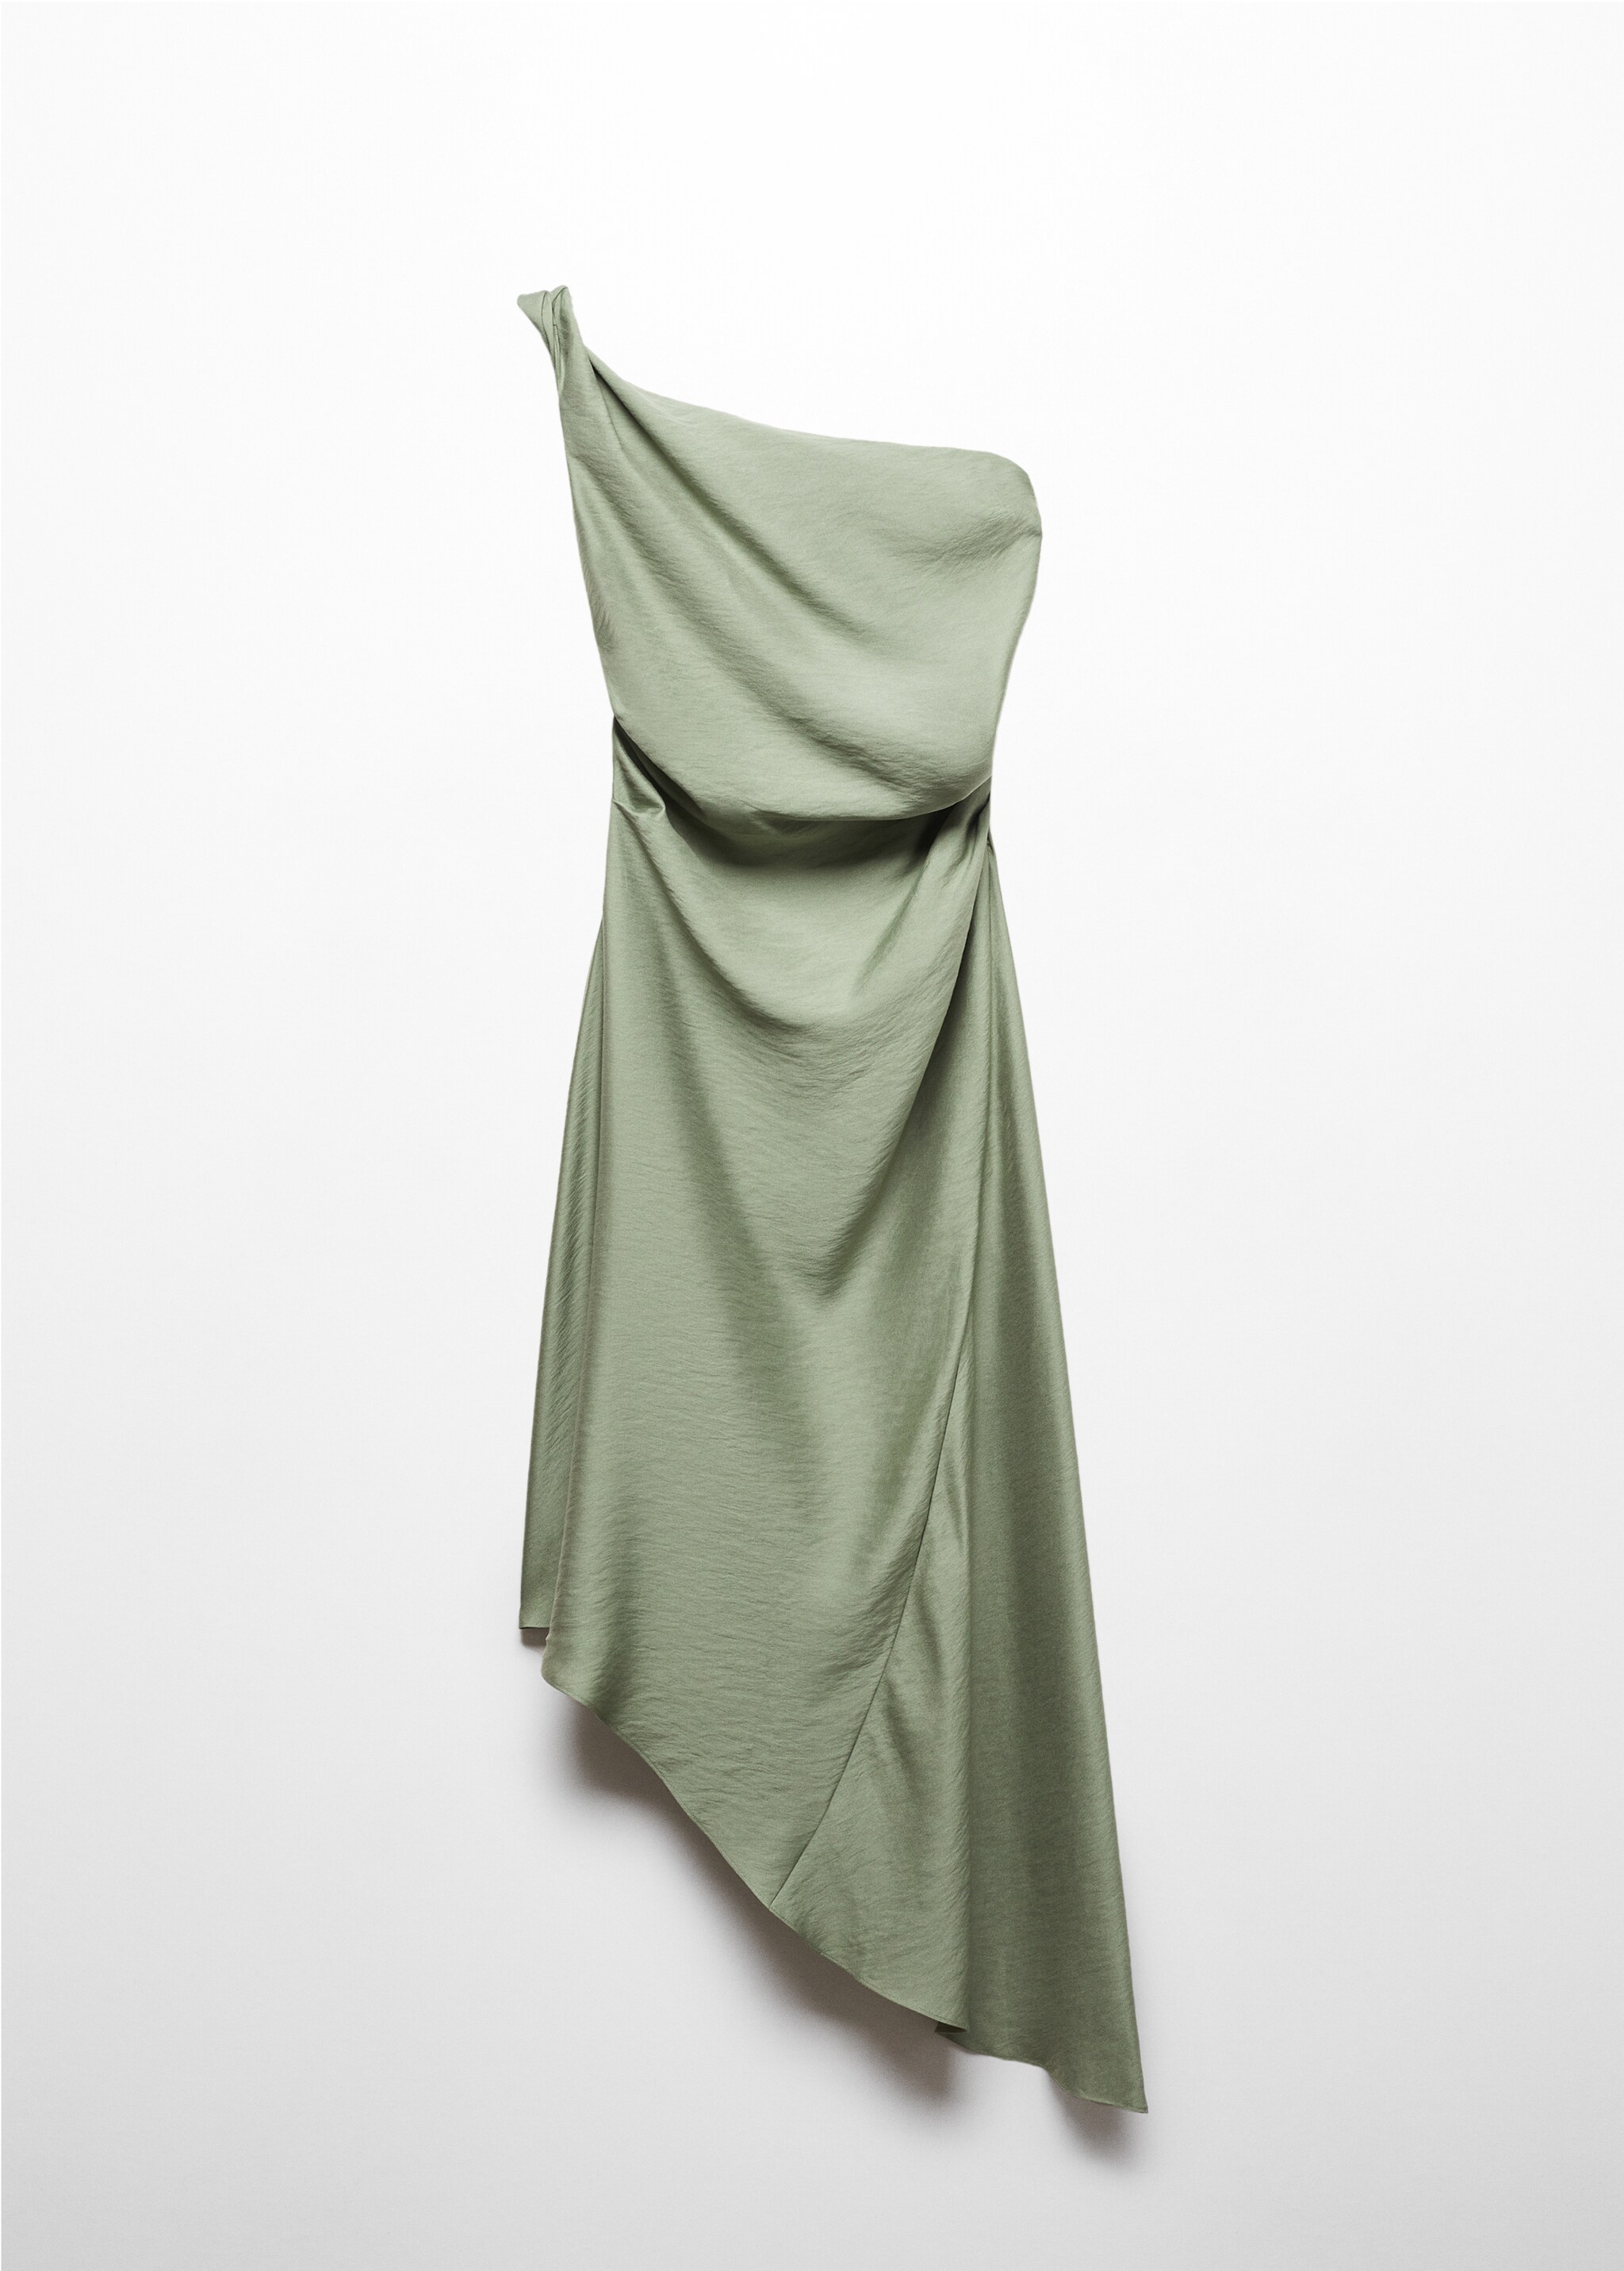 Асимметричное платье со сборками - Изделие без модели